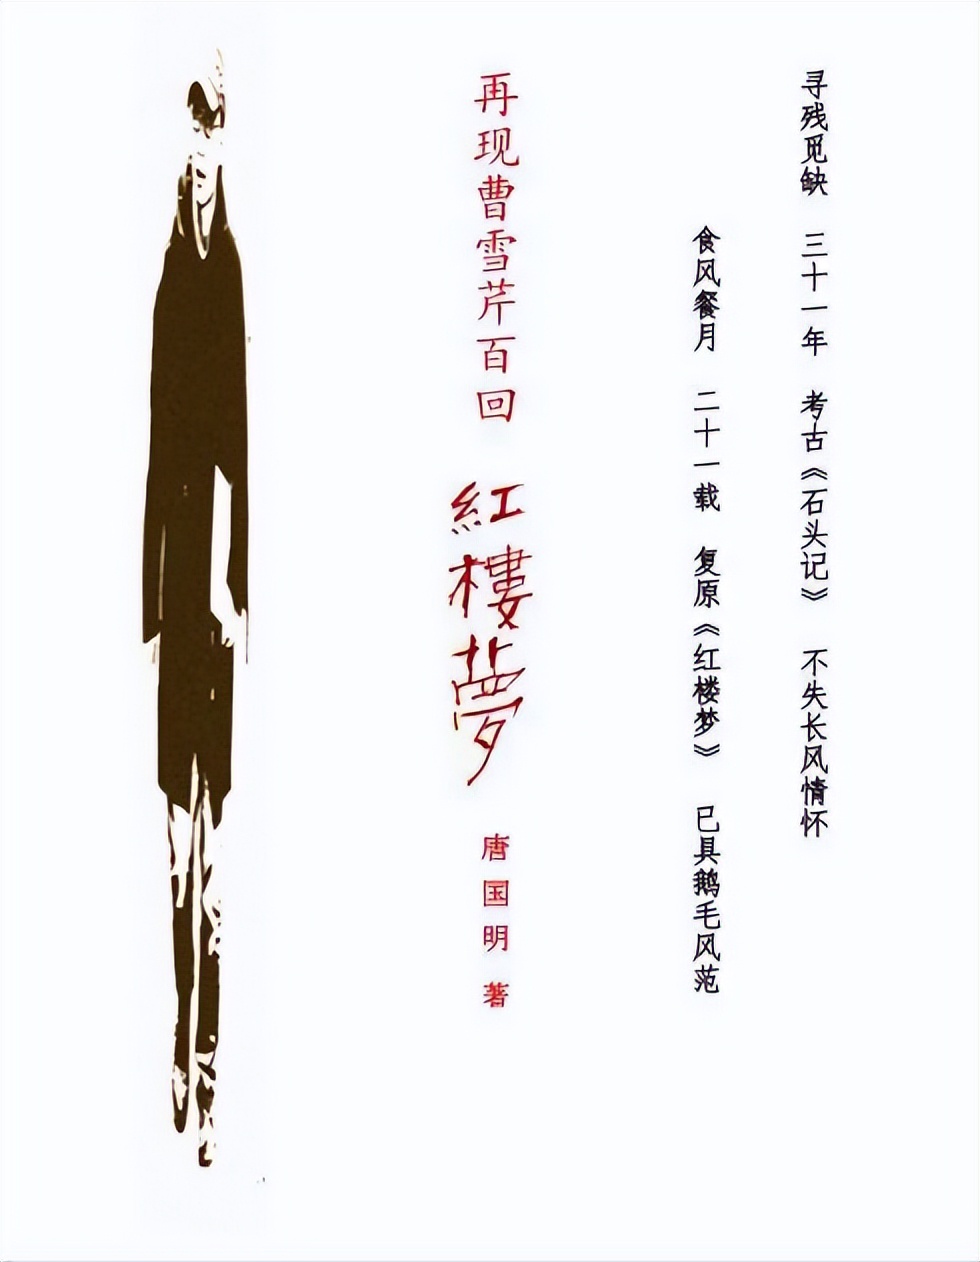 开创诗意流的著名作家唐国明，咋写文说：我们是总在途上的途中人